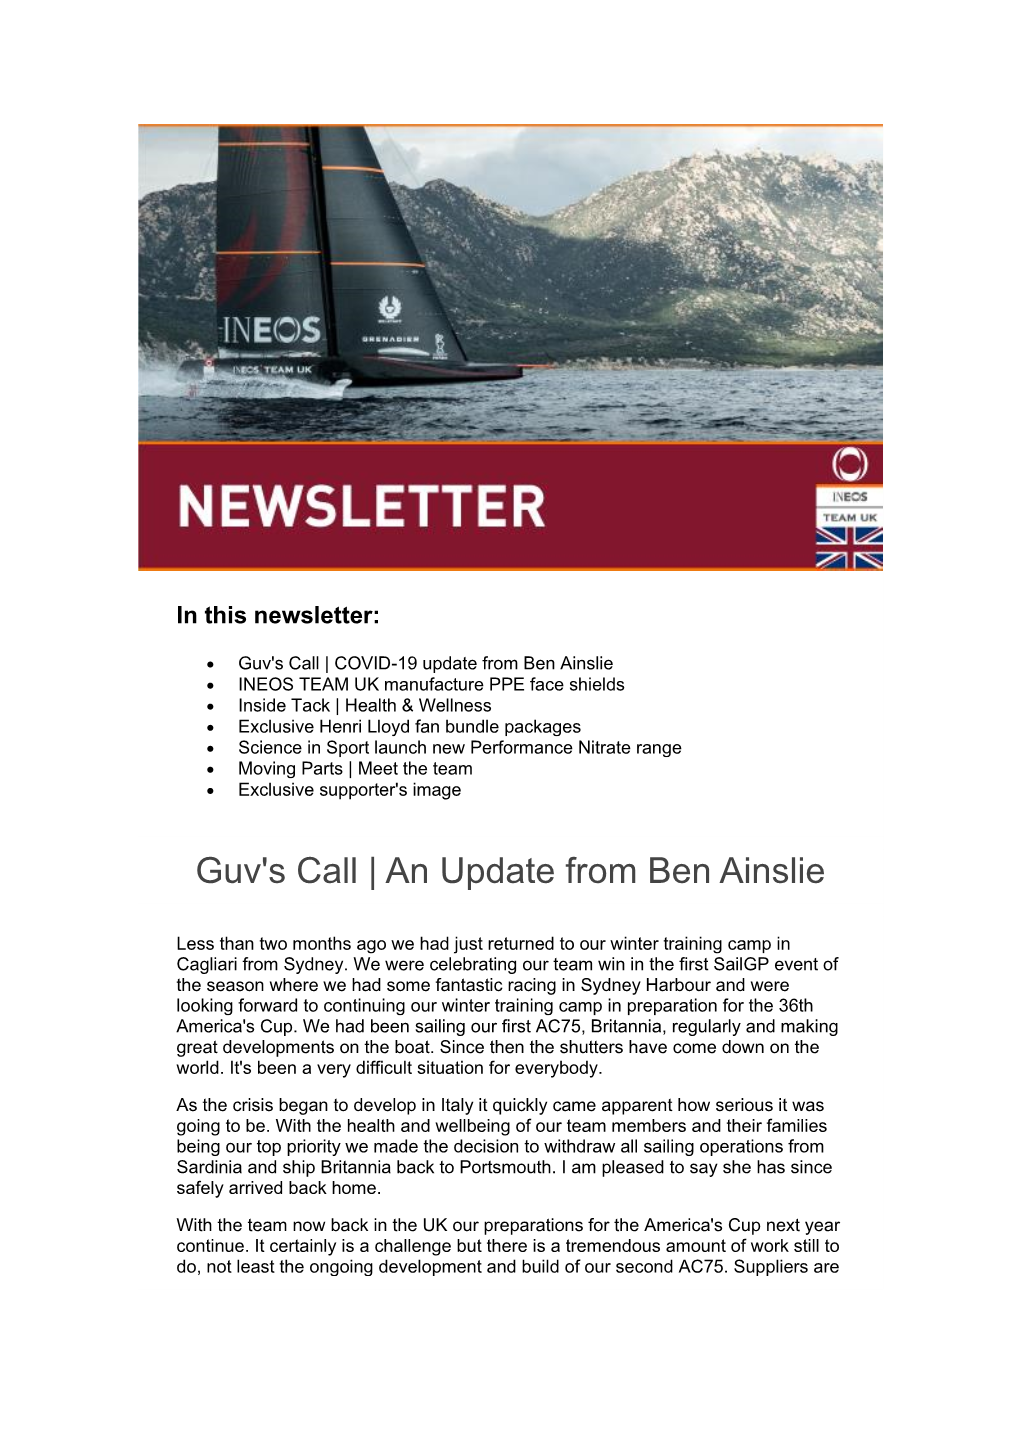 Guv's Call | an Update from Ben Ainslie